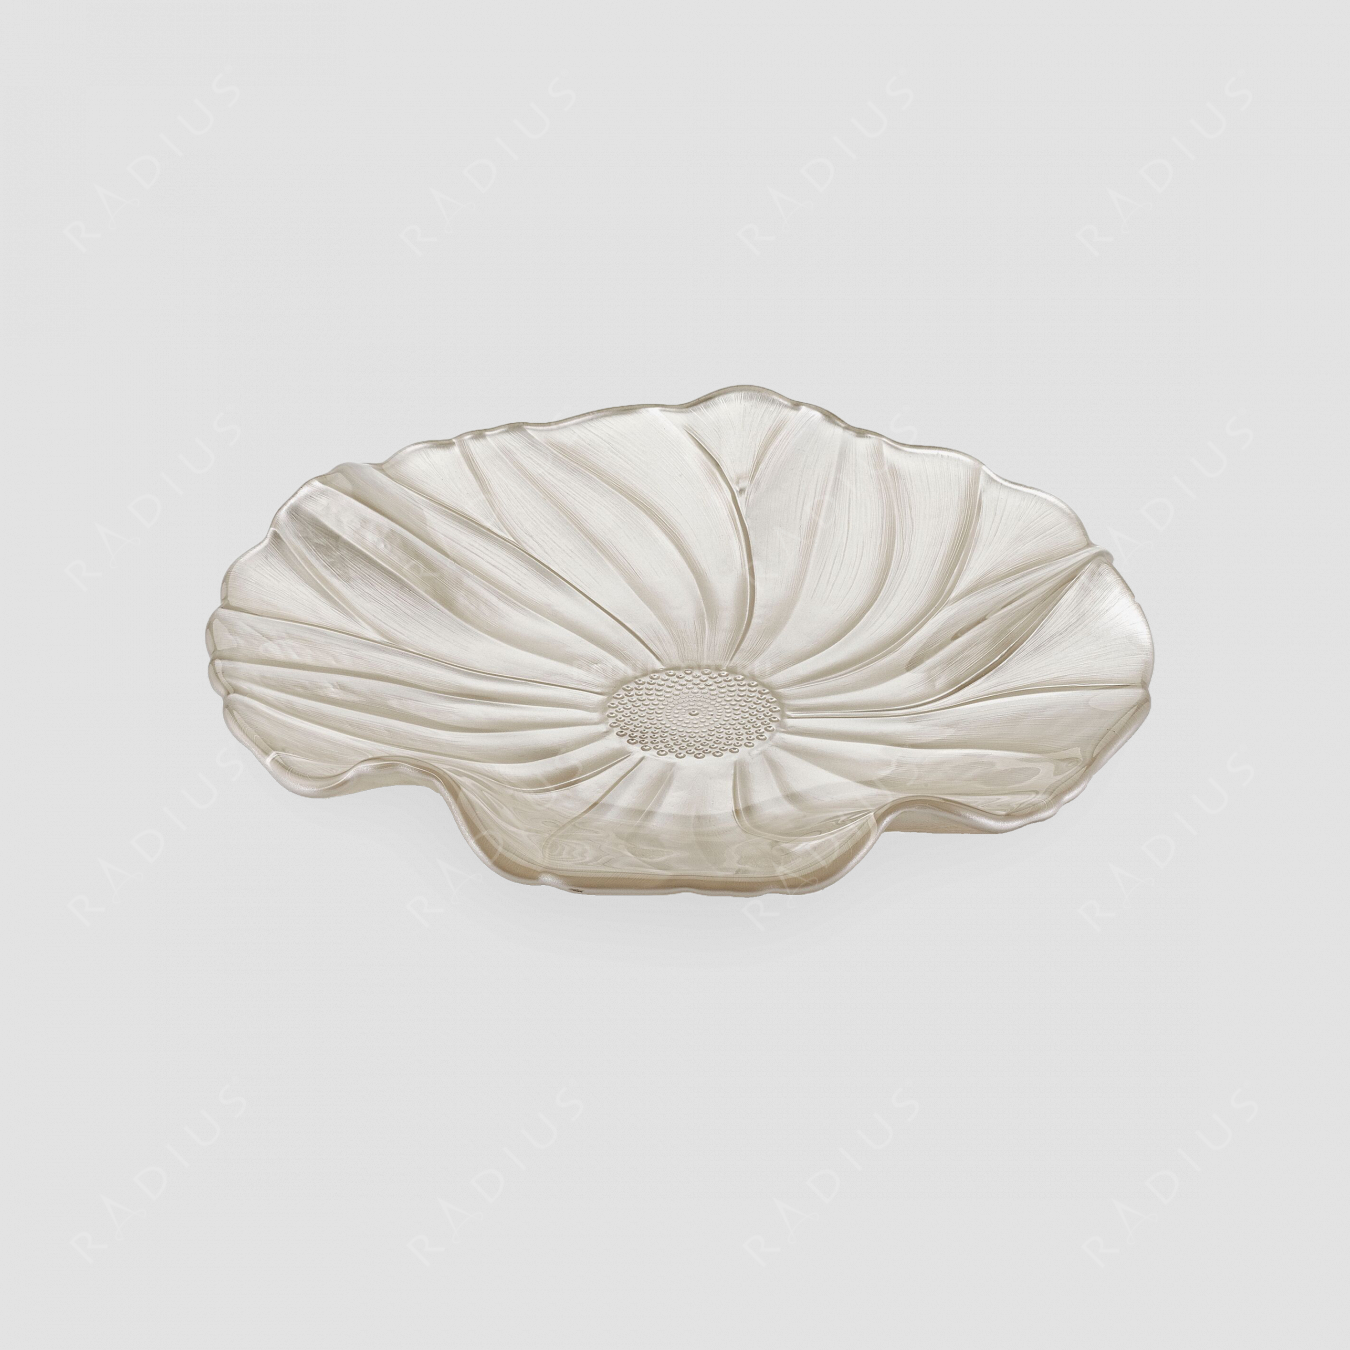 Блюдо круглое , диаметр: 28 см, высота: 4,5 см, материал: стекло, цвет: слоновой кости, серия Magnolia, IVV (Italy), Италия